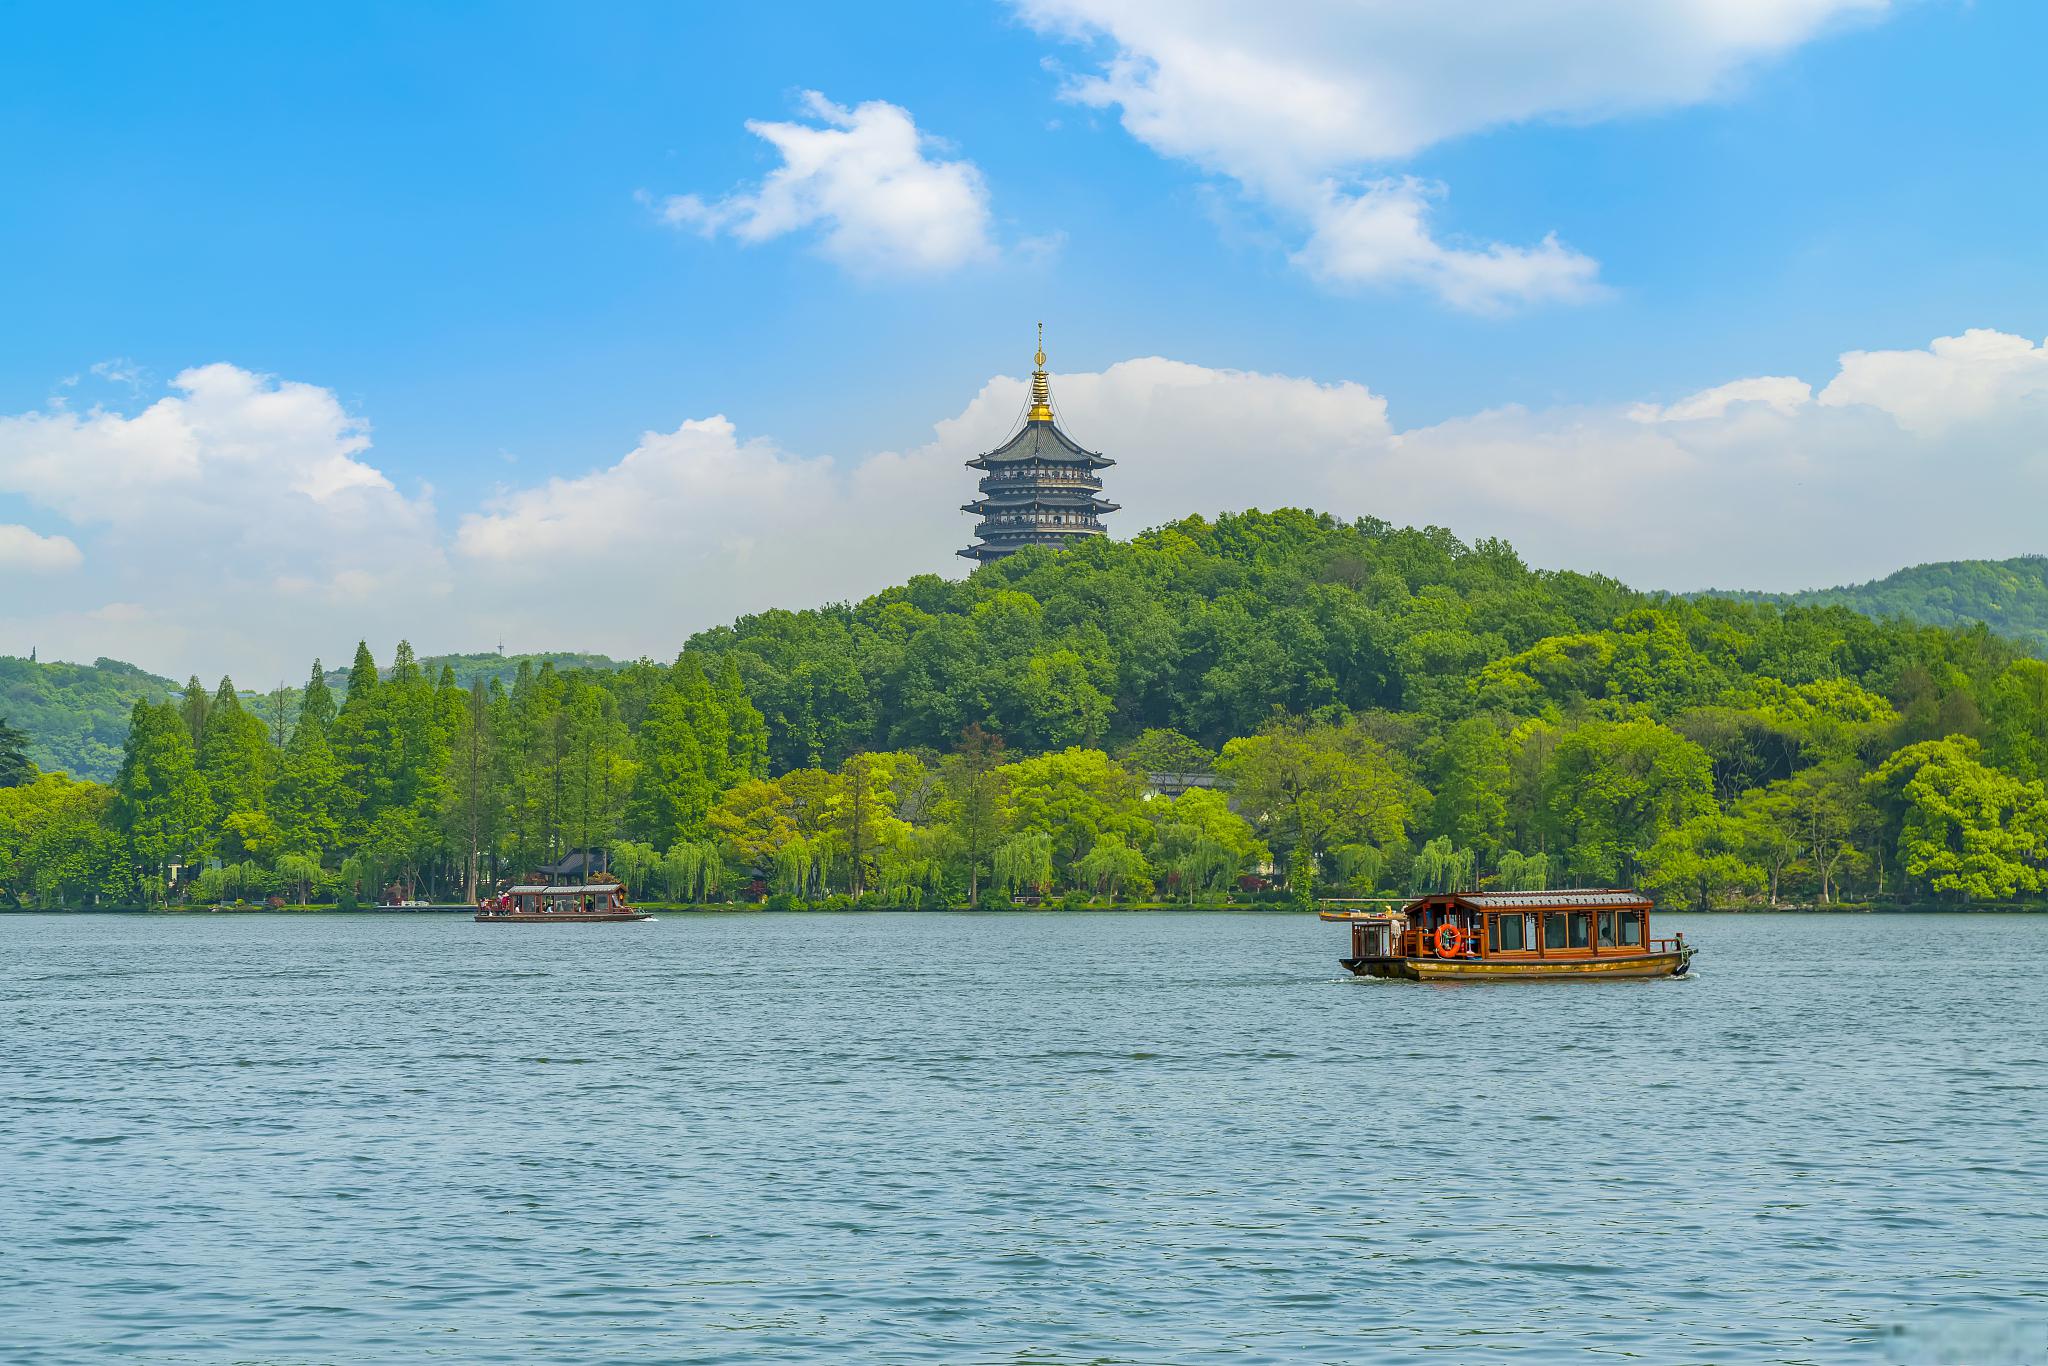 杭州西湖位于中国浙江省杭州市西部,它具有悠久的历史背景,面积约为60